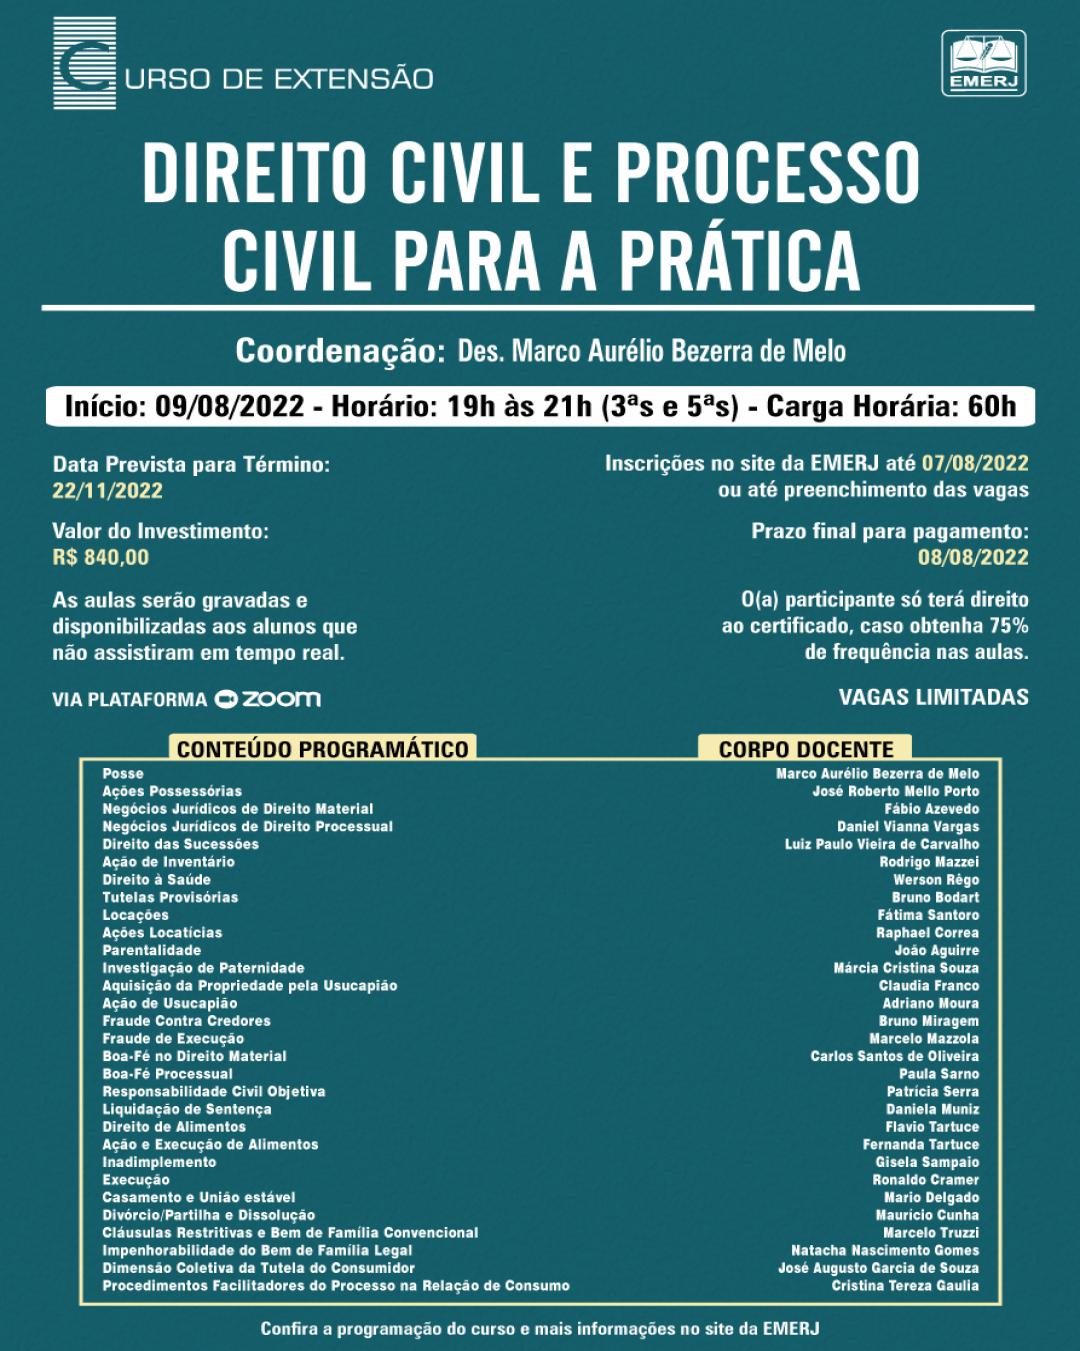 Imagem do banner principal do curso - DIREITO CIVIL E PROCESSO CIVIL PARA A PRÁTICA.